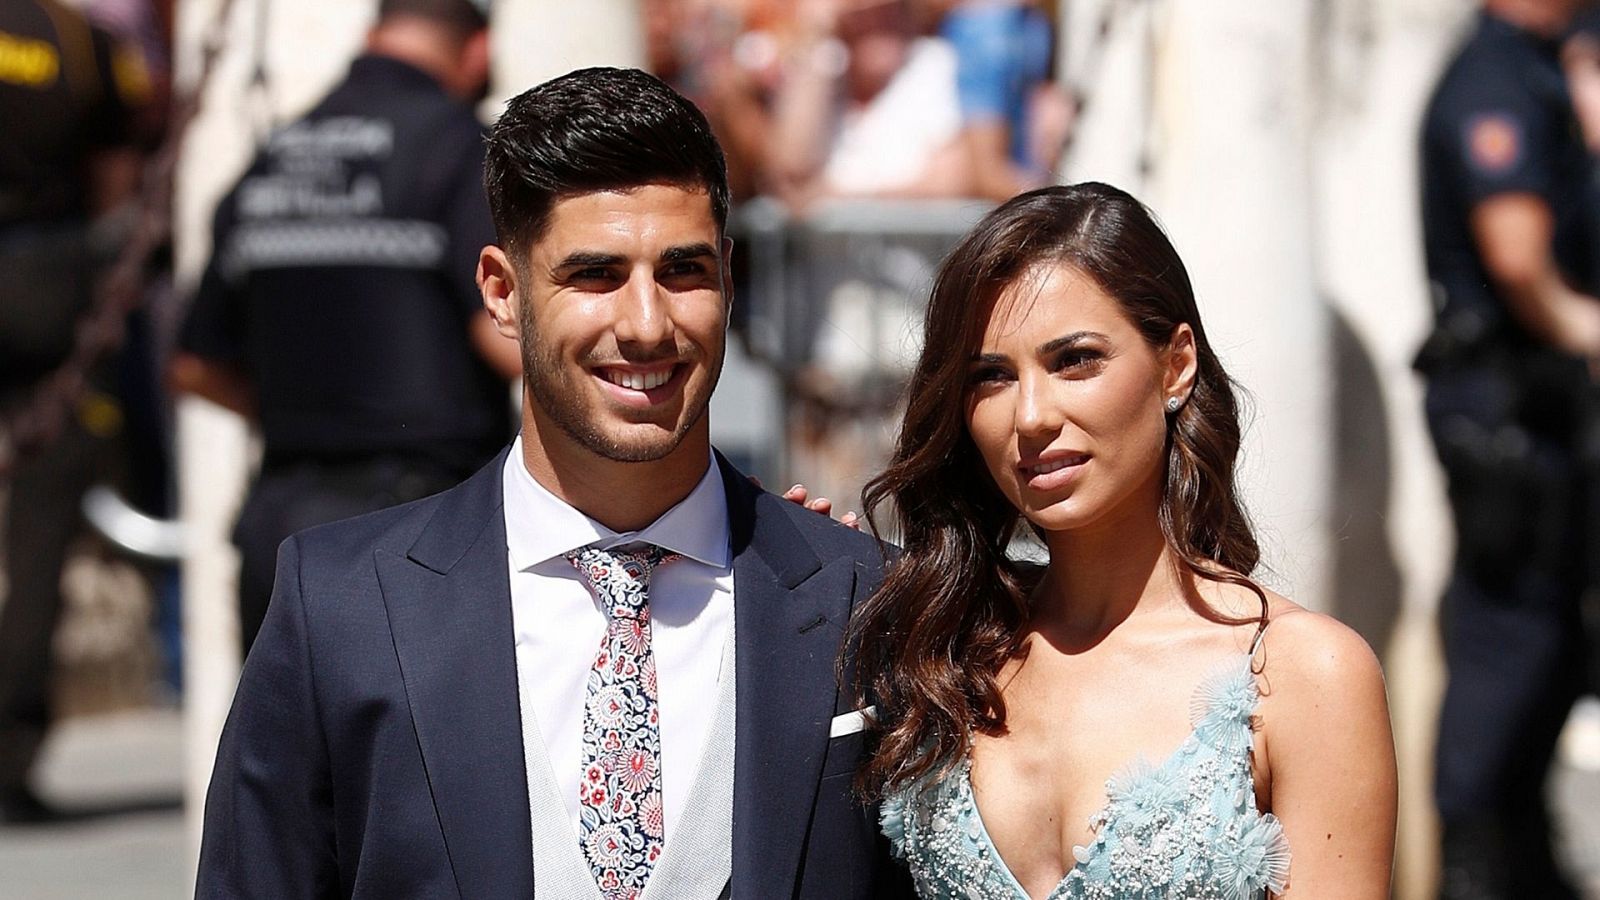 Un jugador del Madrid pide matrimonio a su novia y en sociales